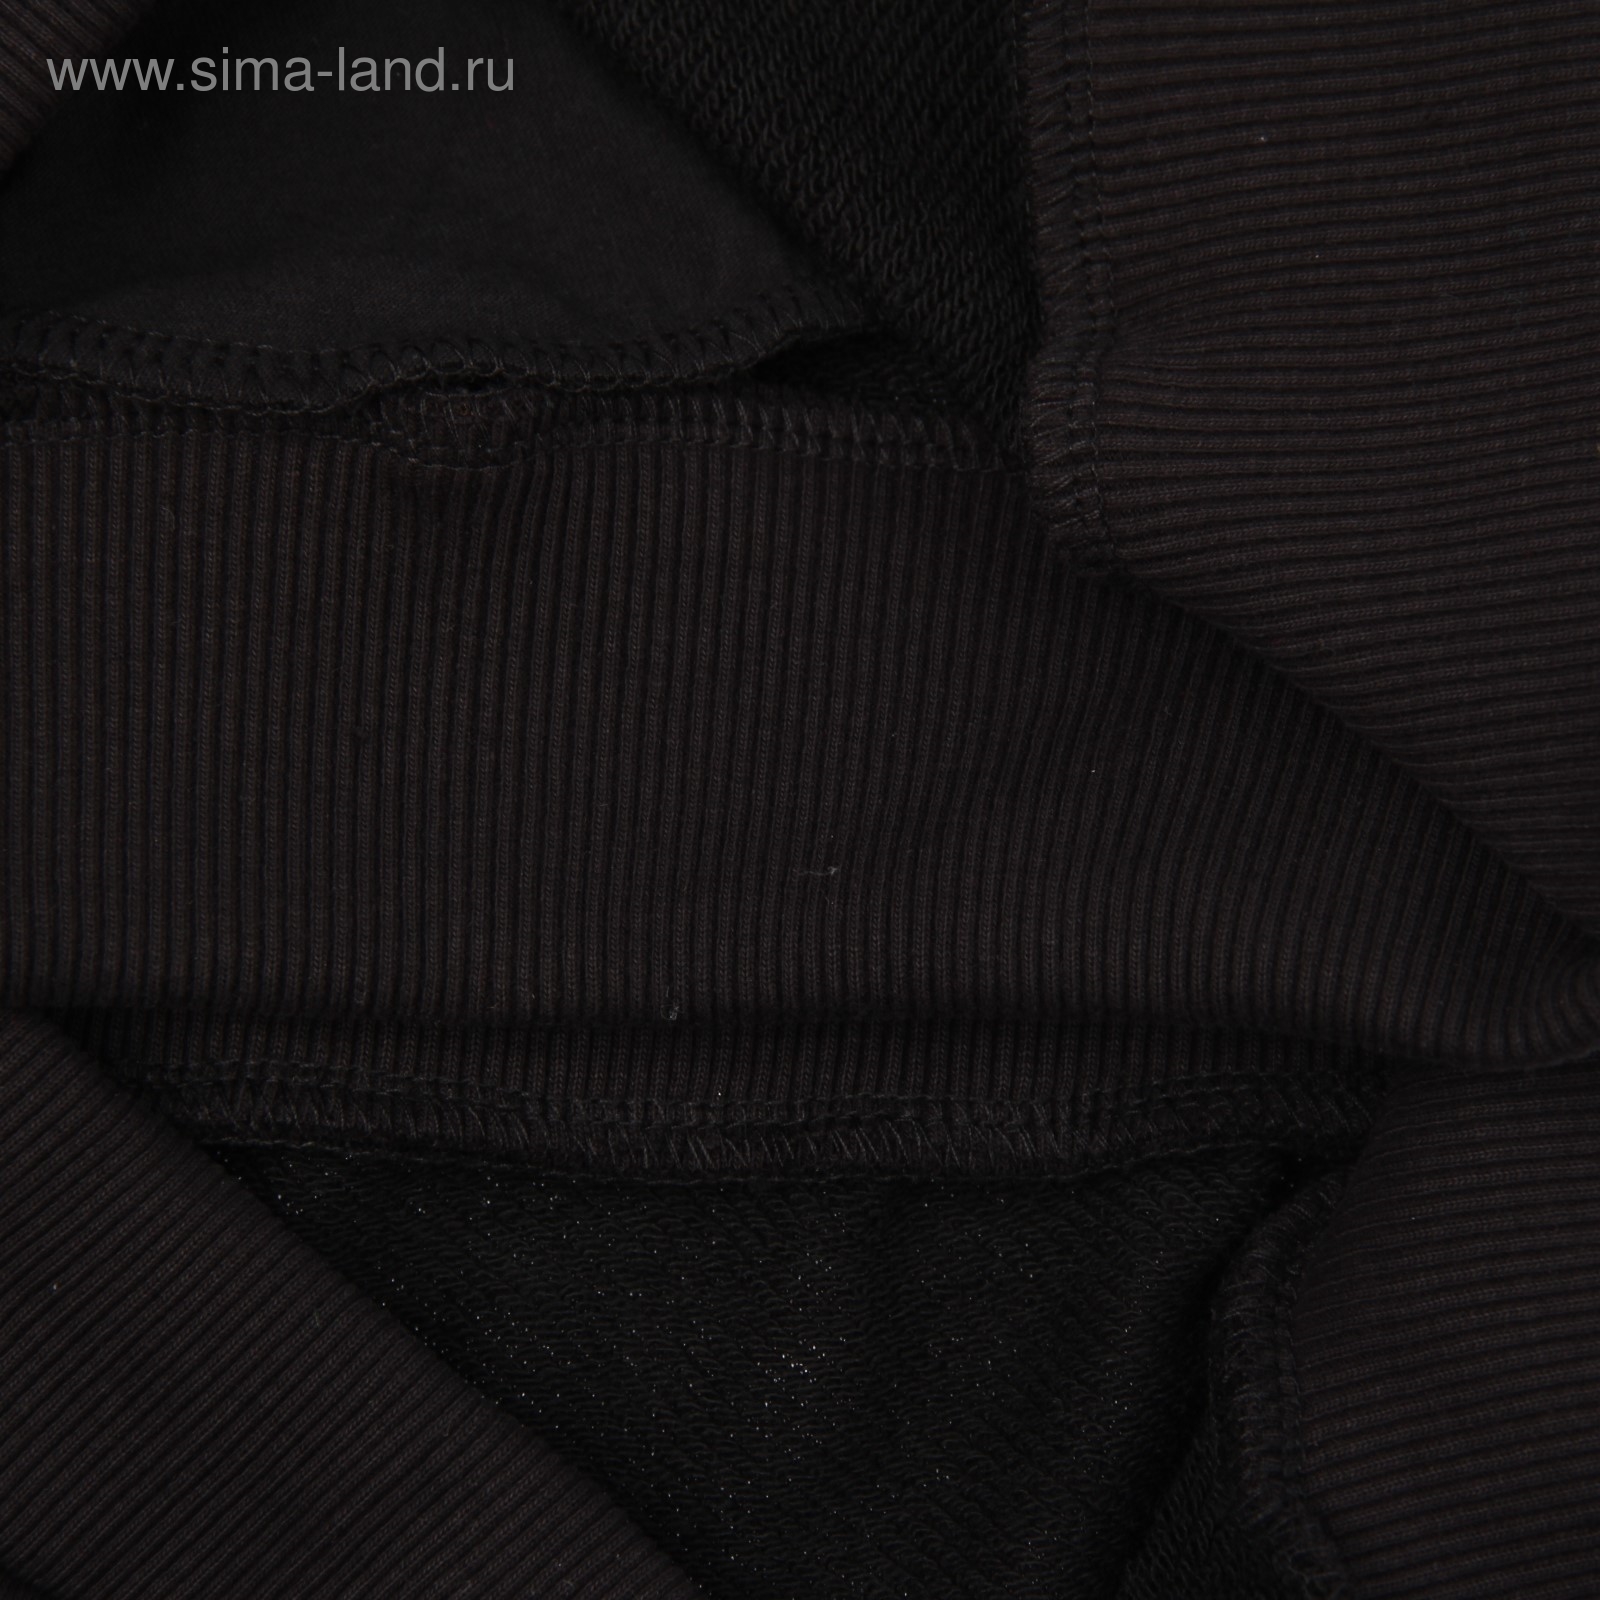 Костюм мужской (толстовка, брюки) М-764-29 черный, р-р 50